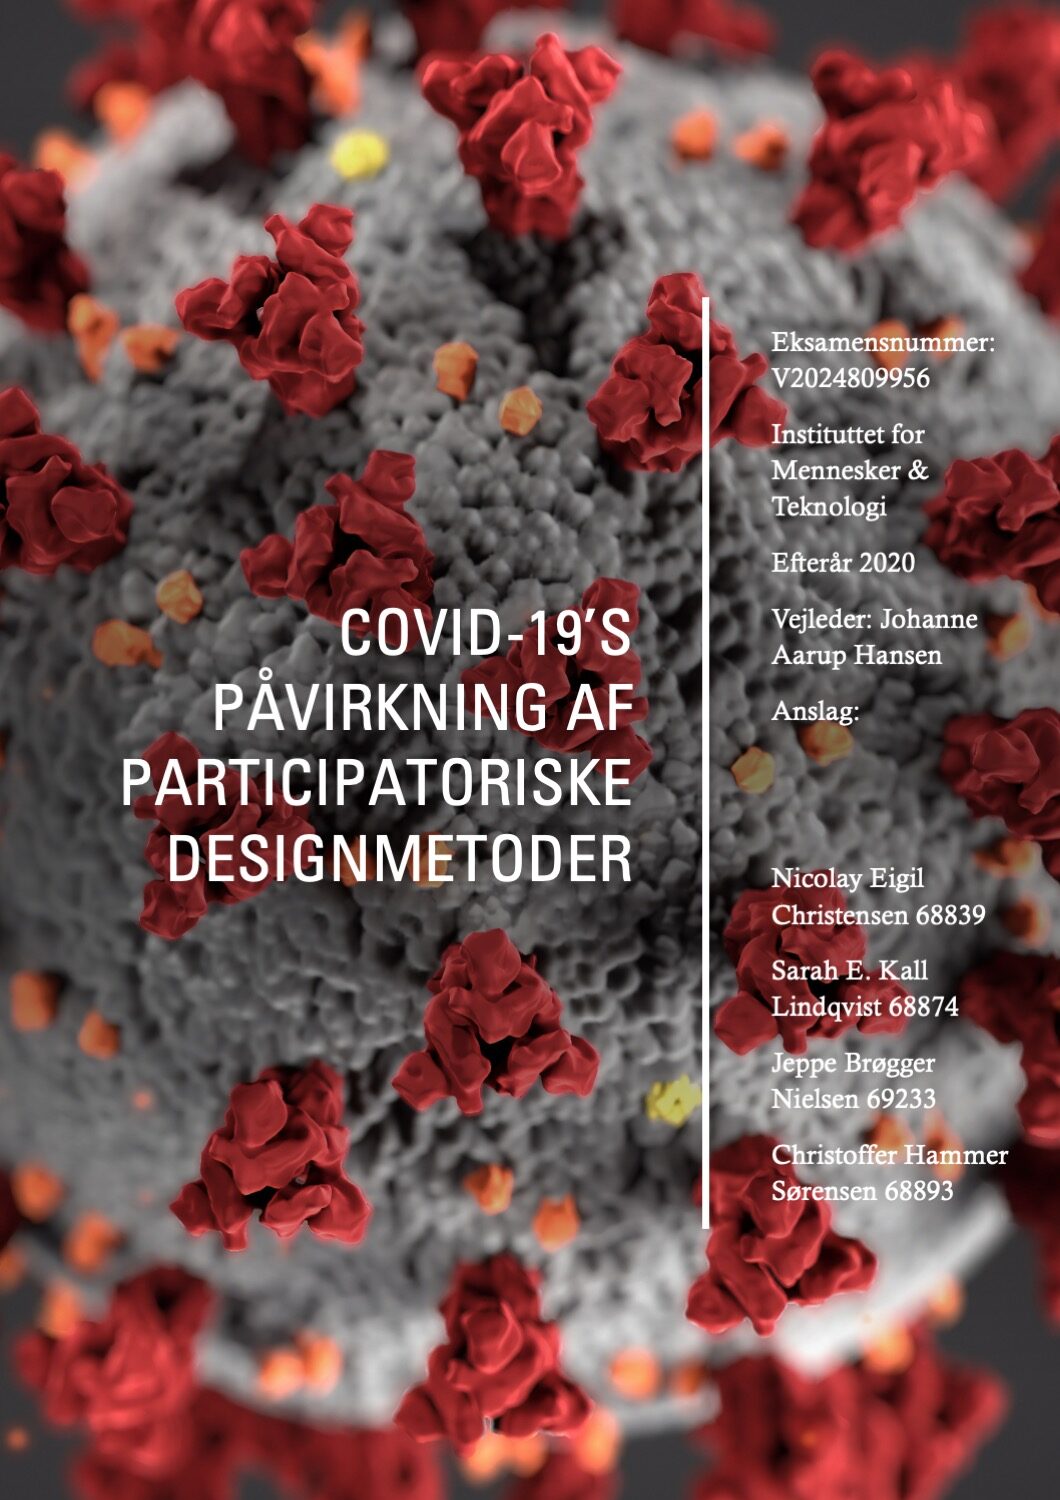 Covid-19’s påvirkning af PD-metoder